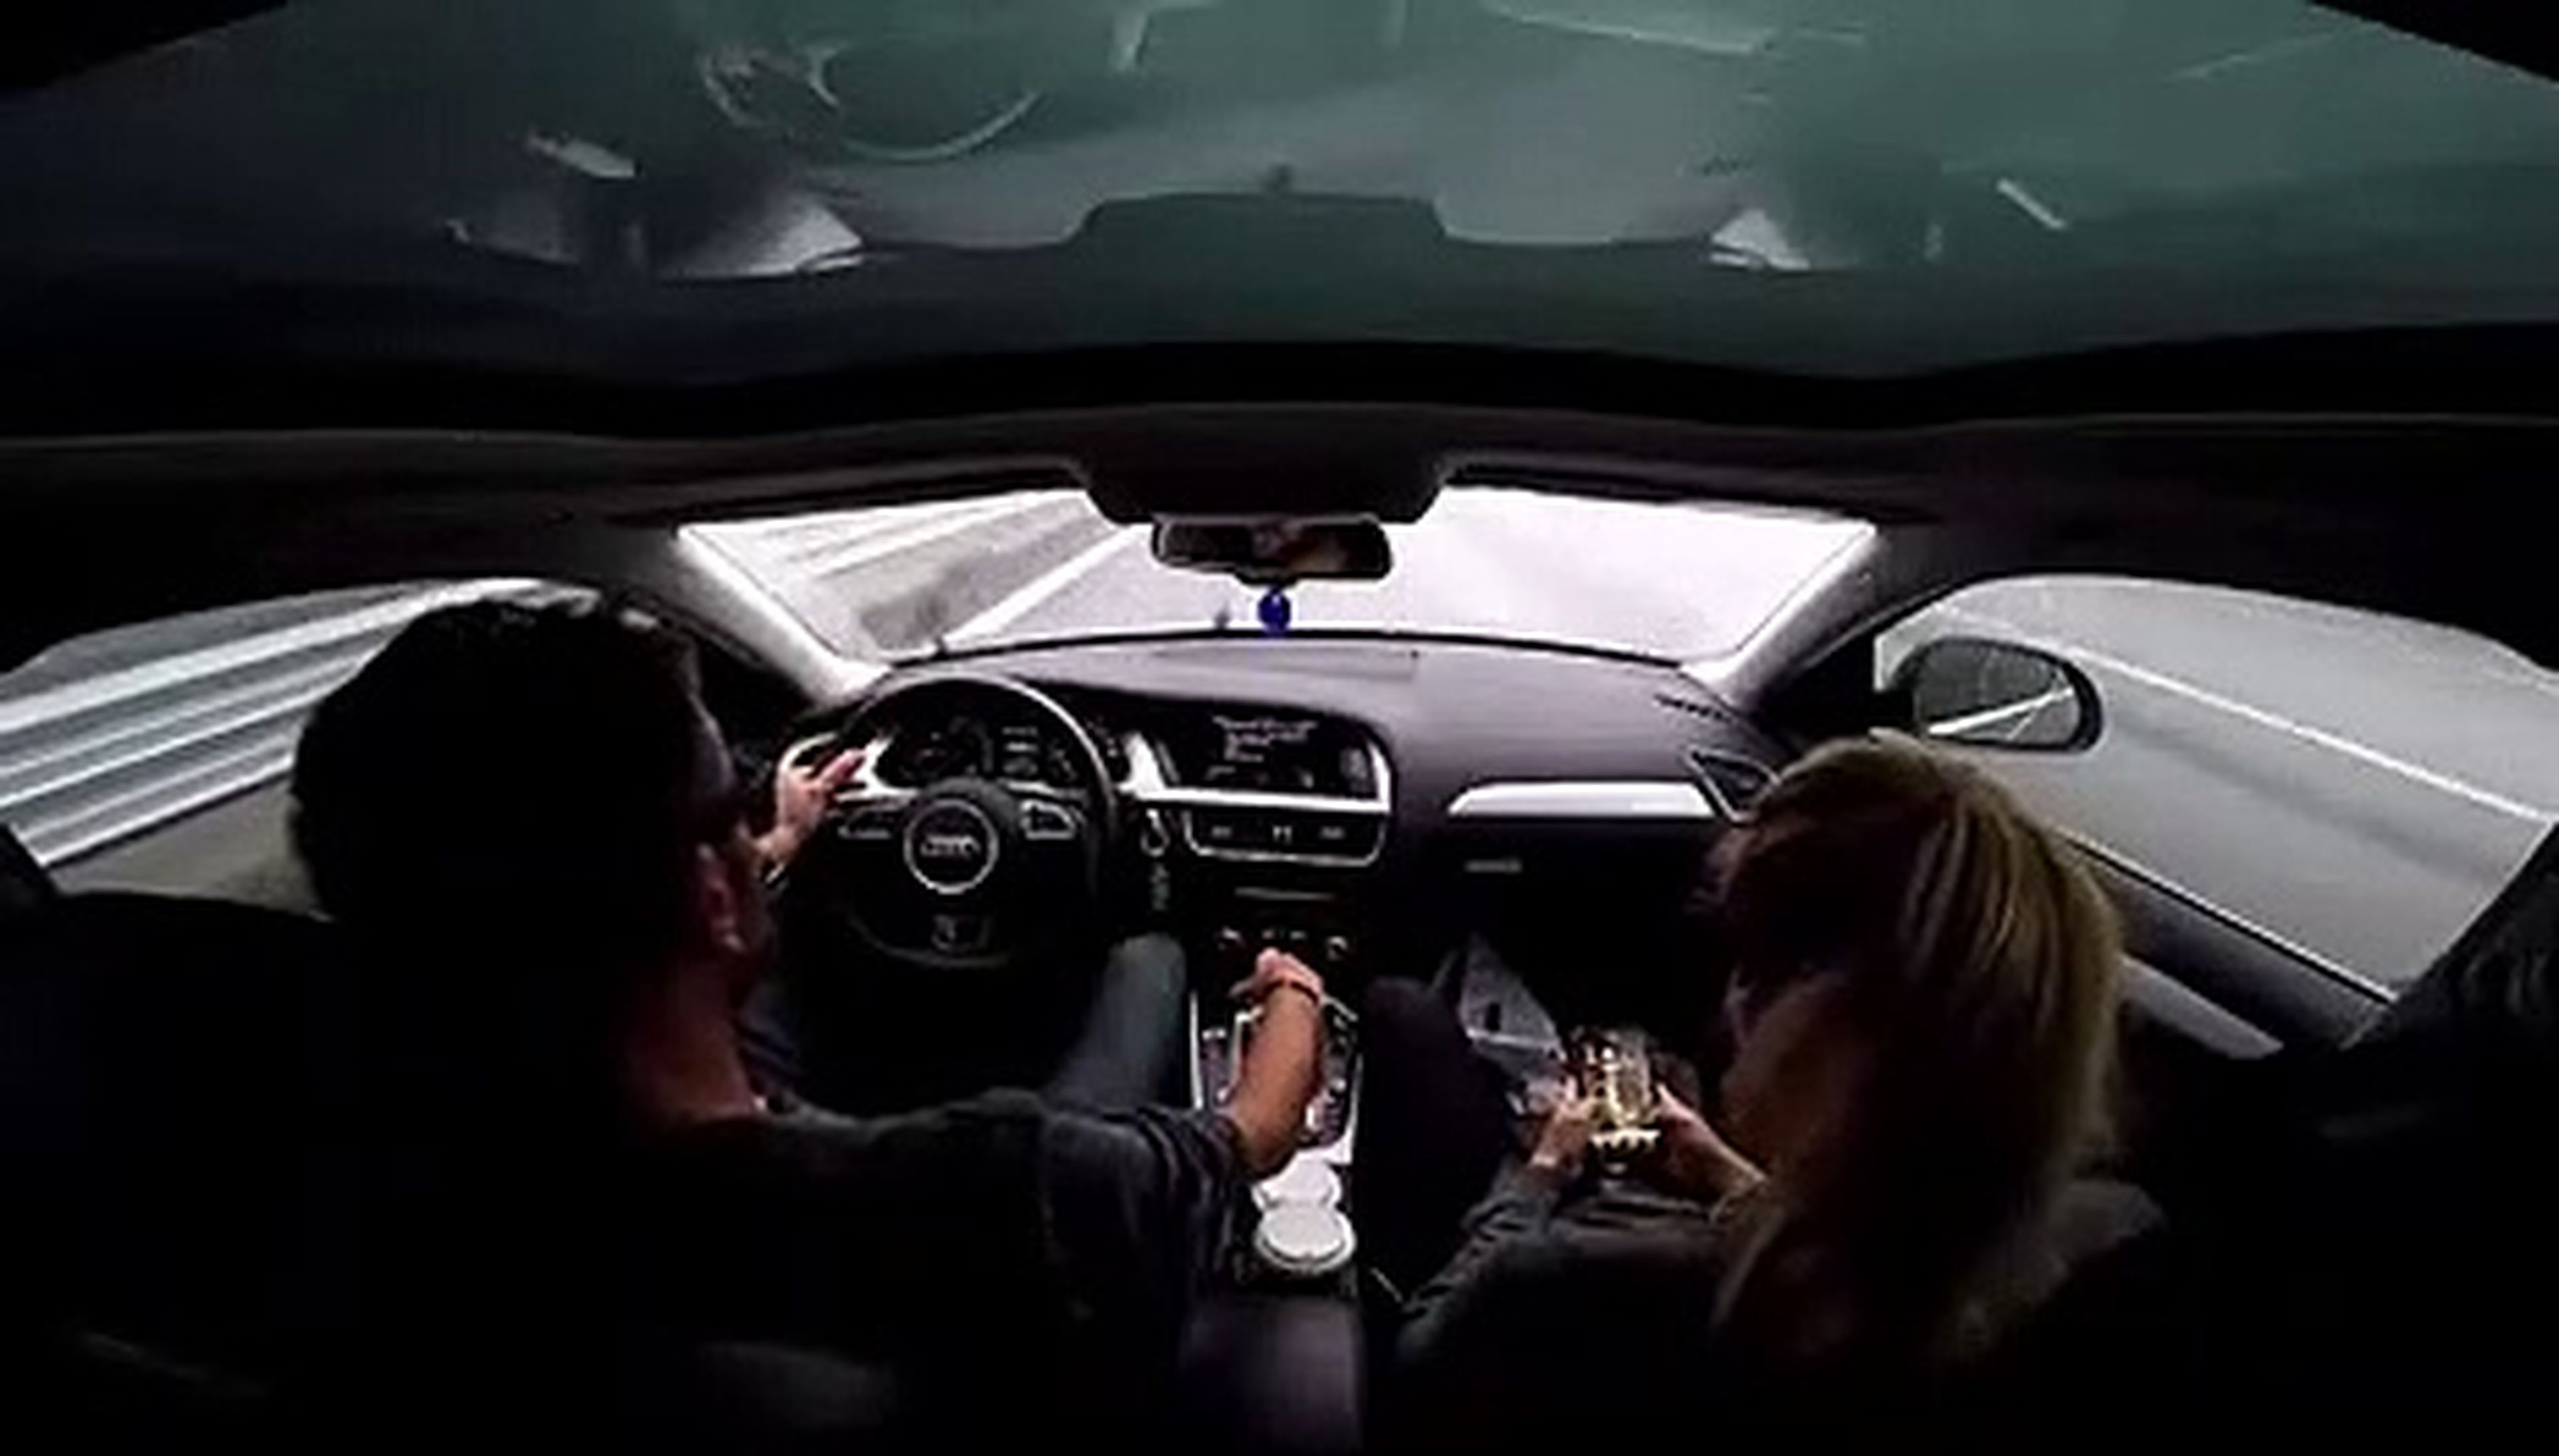 VÍDEO: Pierde el control de su coche a 140 km/h y lo controla... ¡Vaya crack!